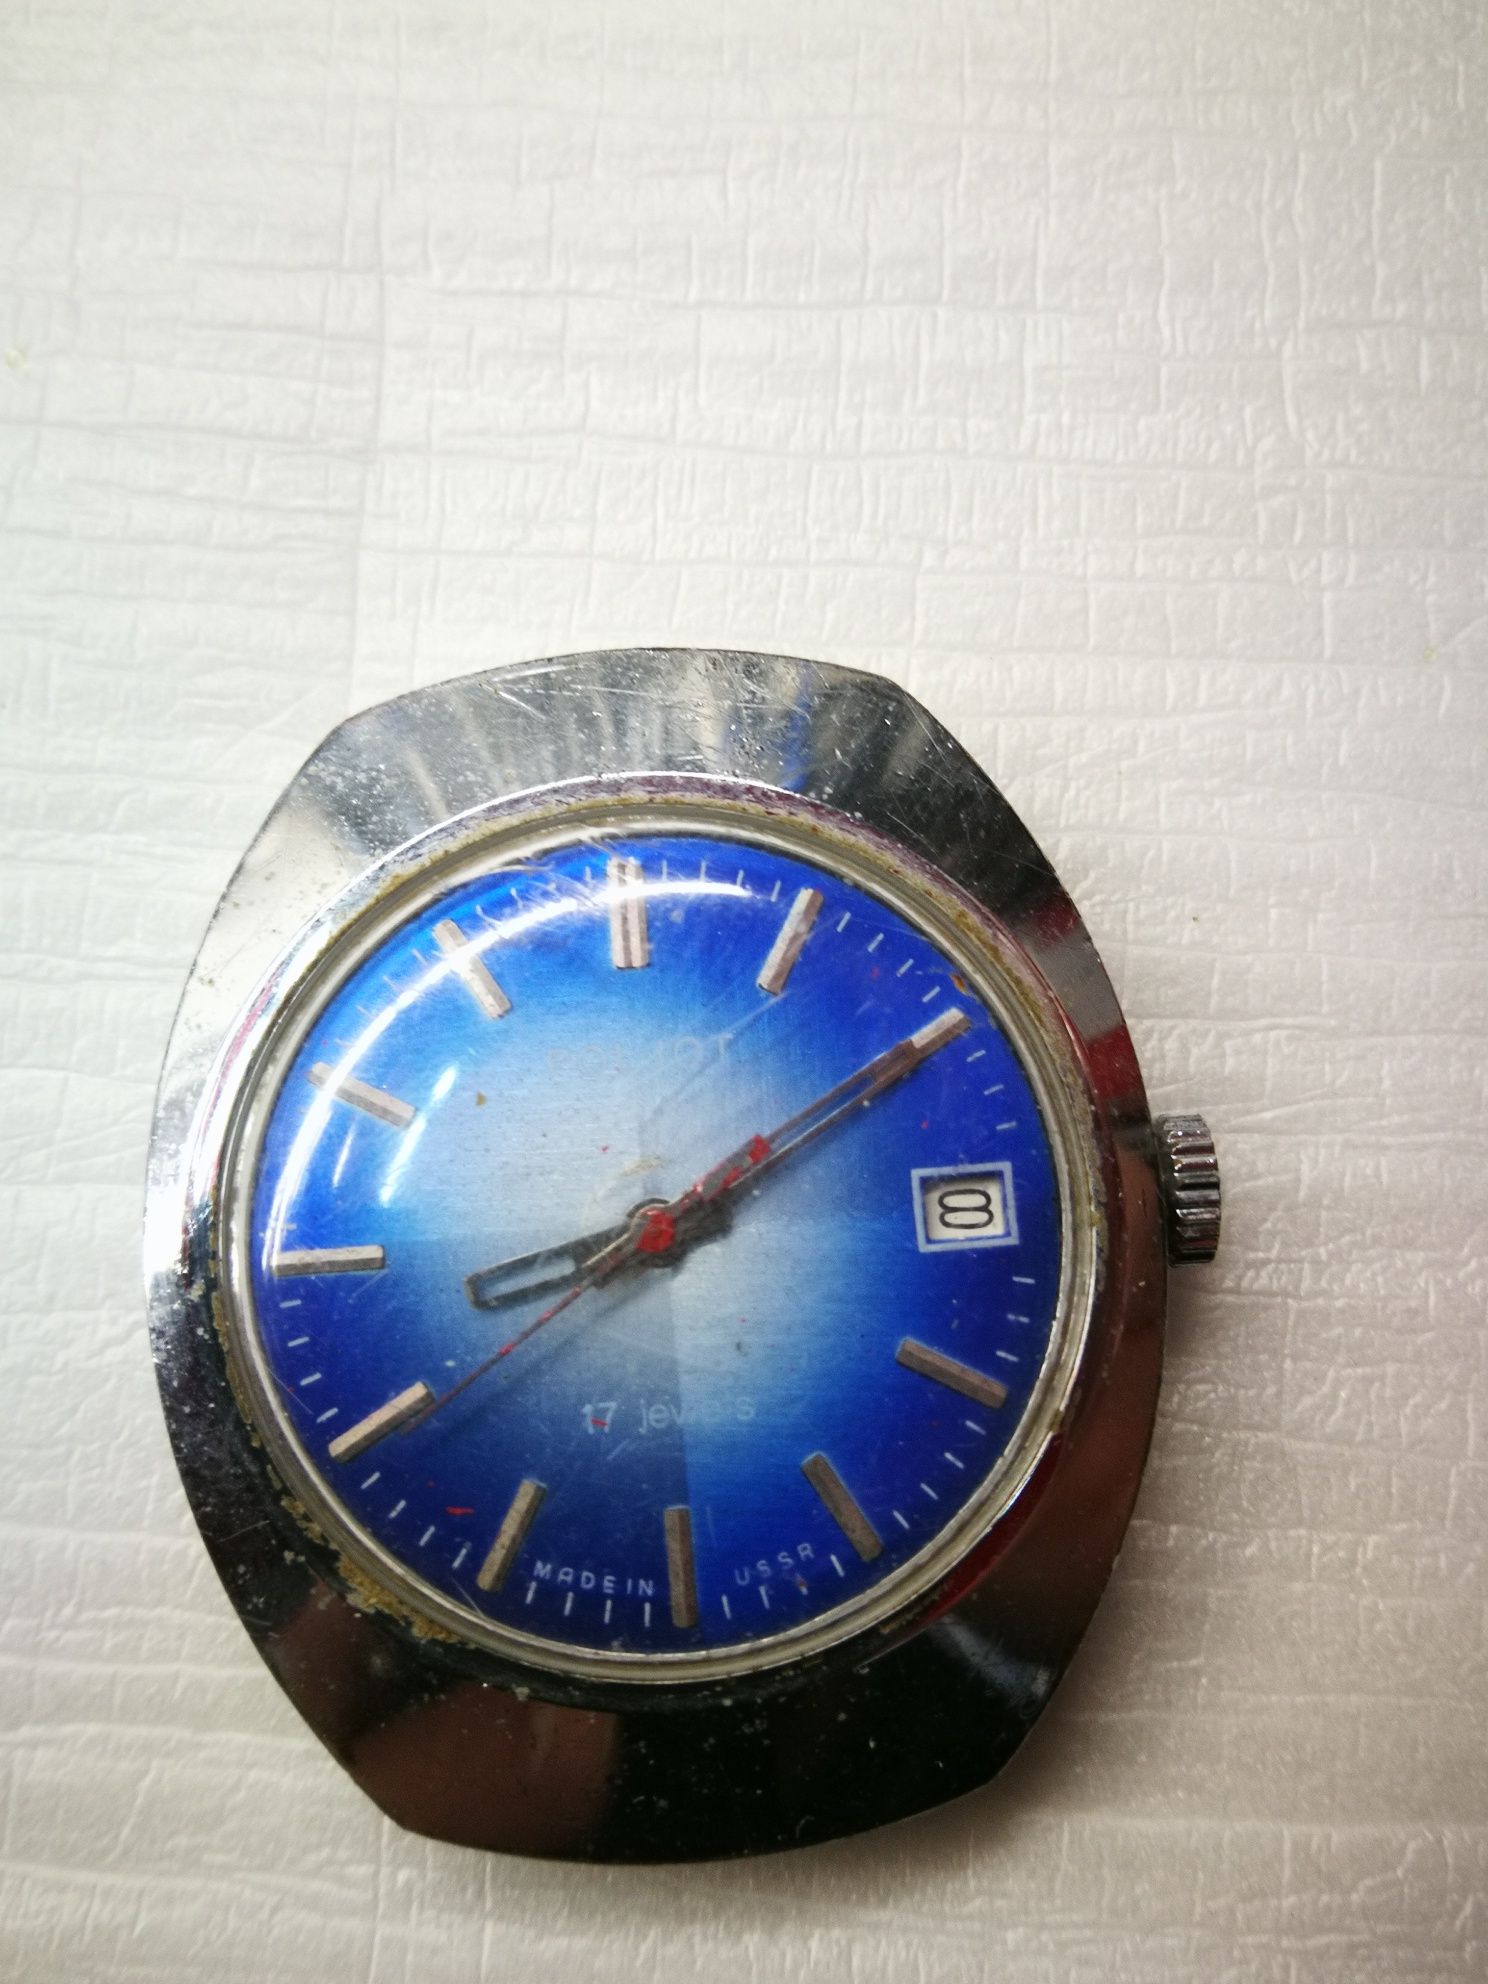 Полет Poljot 17 jewels руски механичен часовник